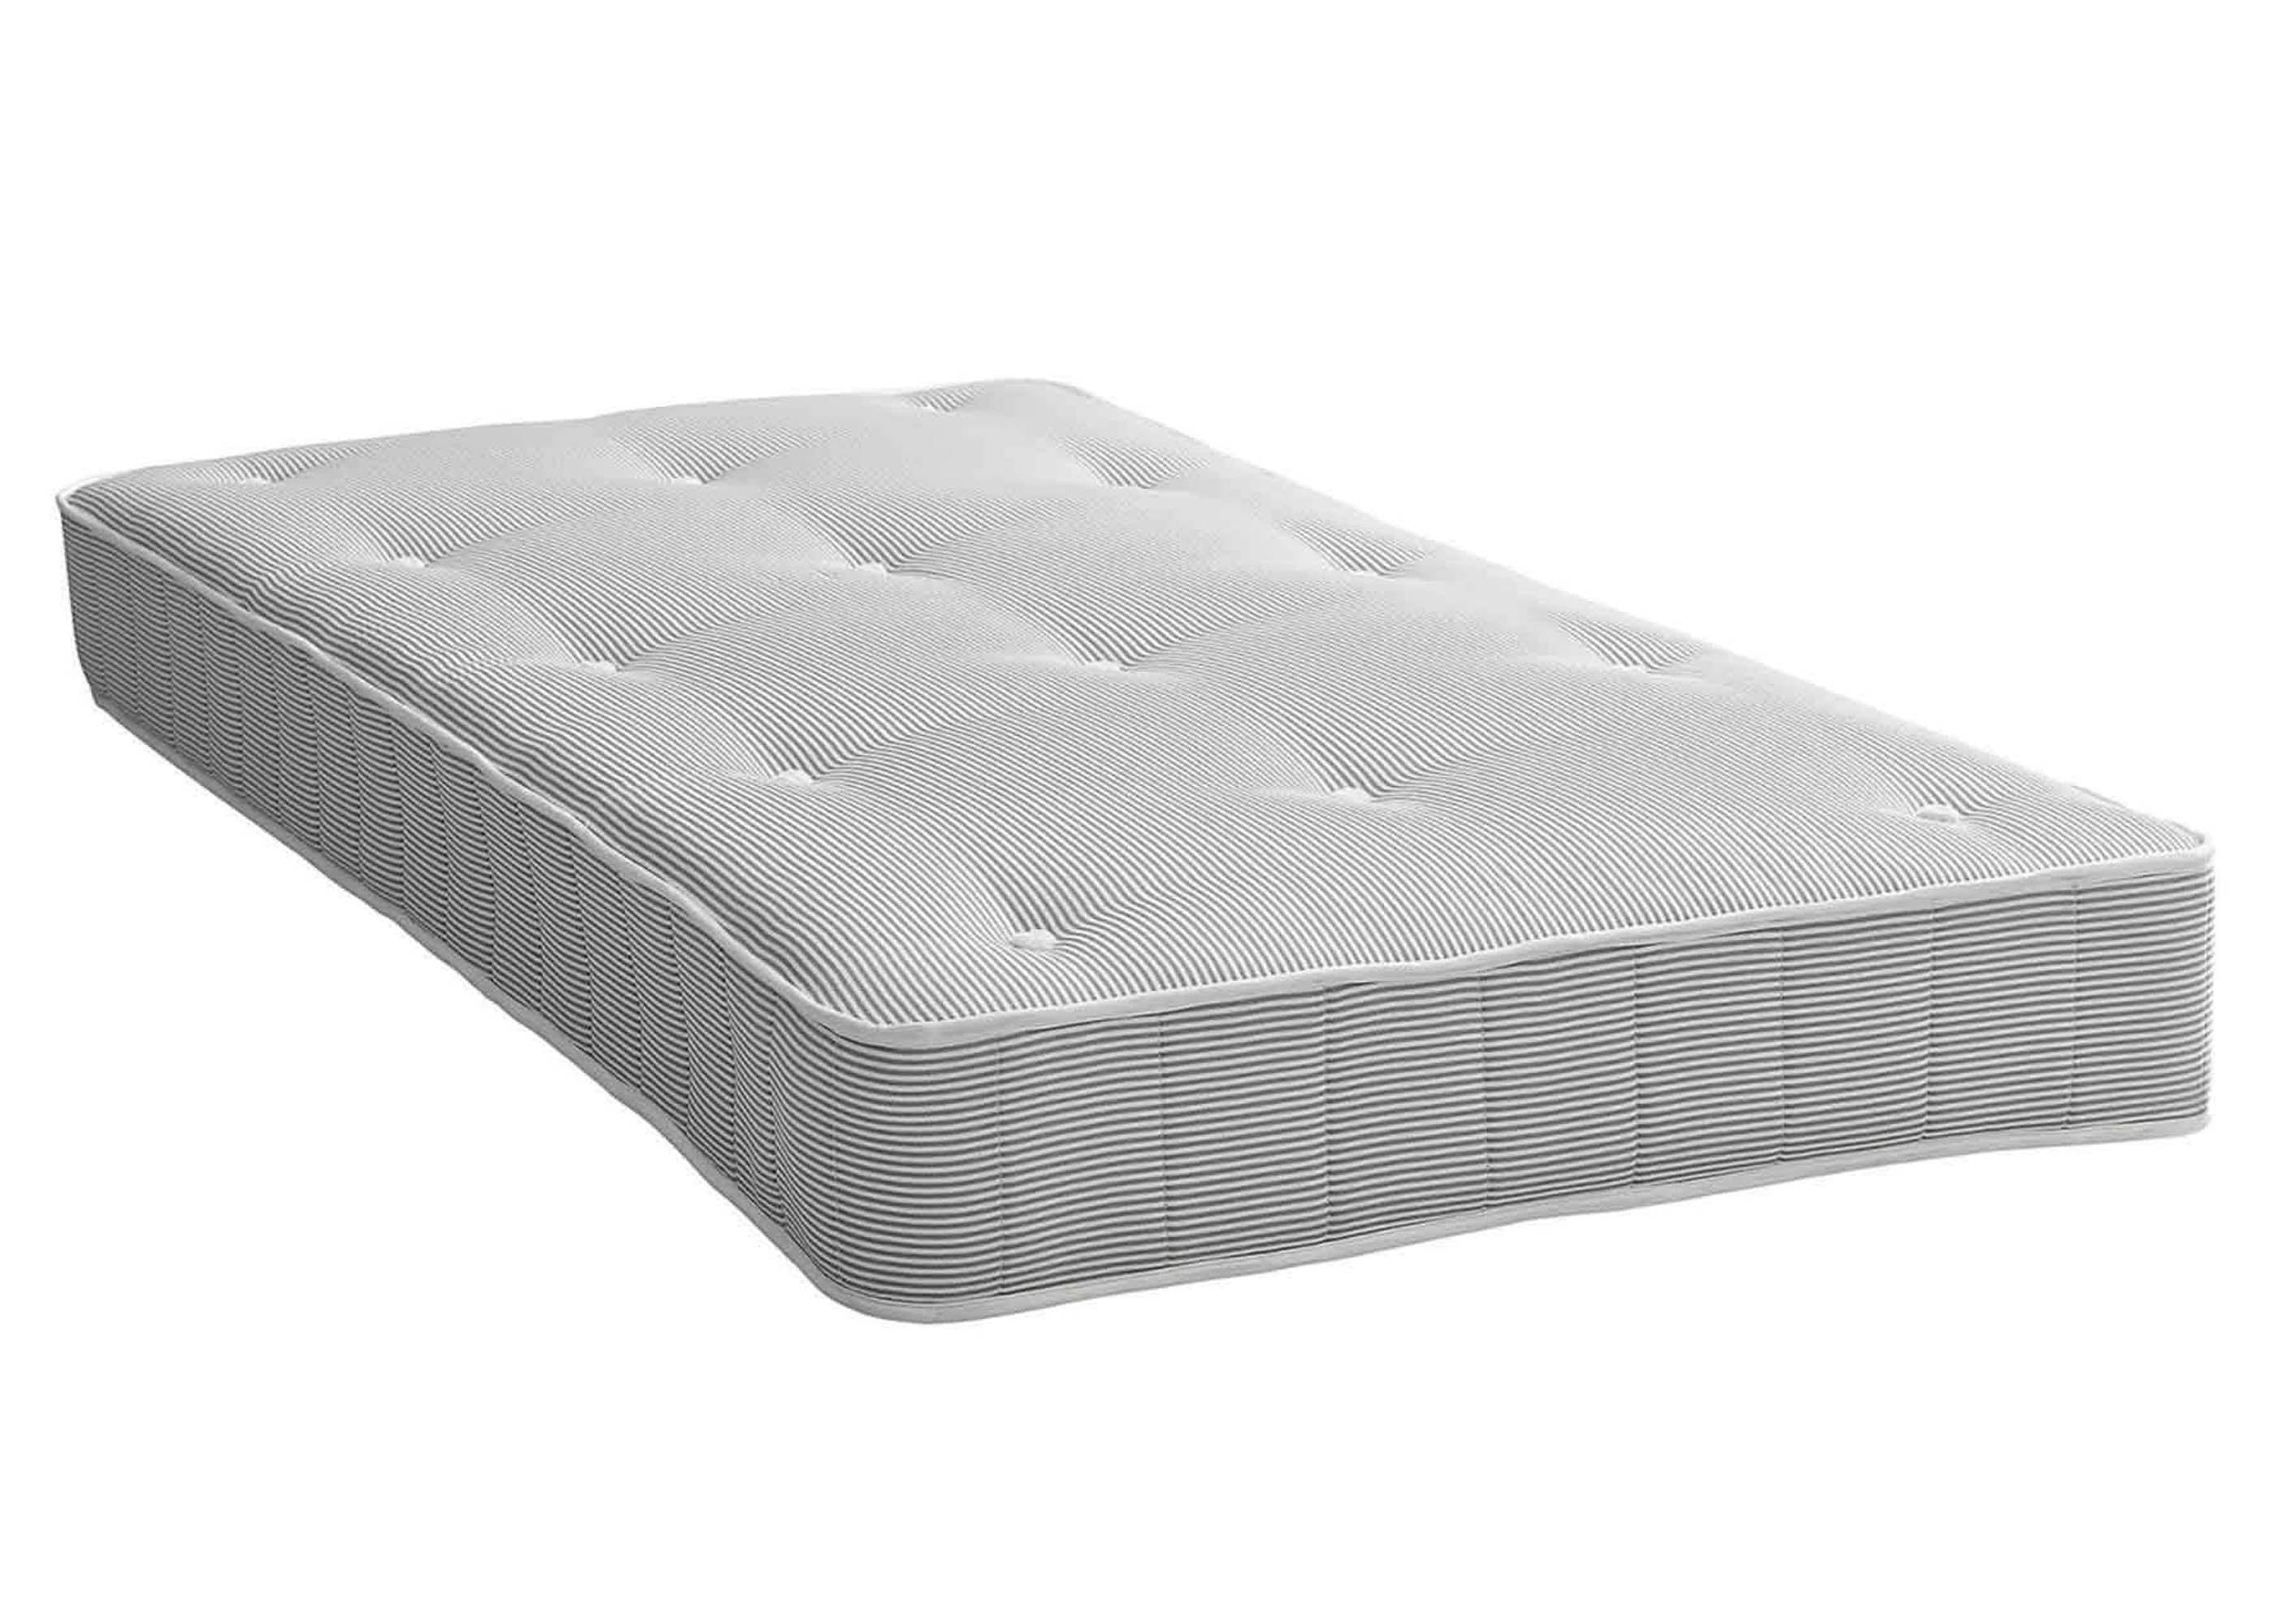 mattress for sale cindy carter